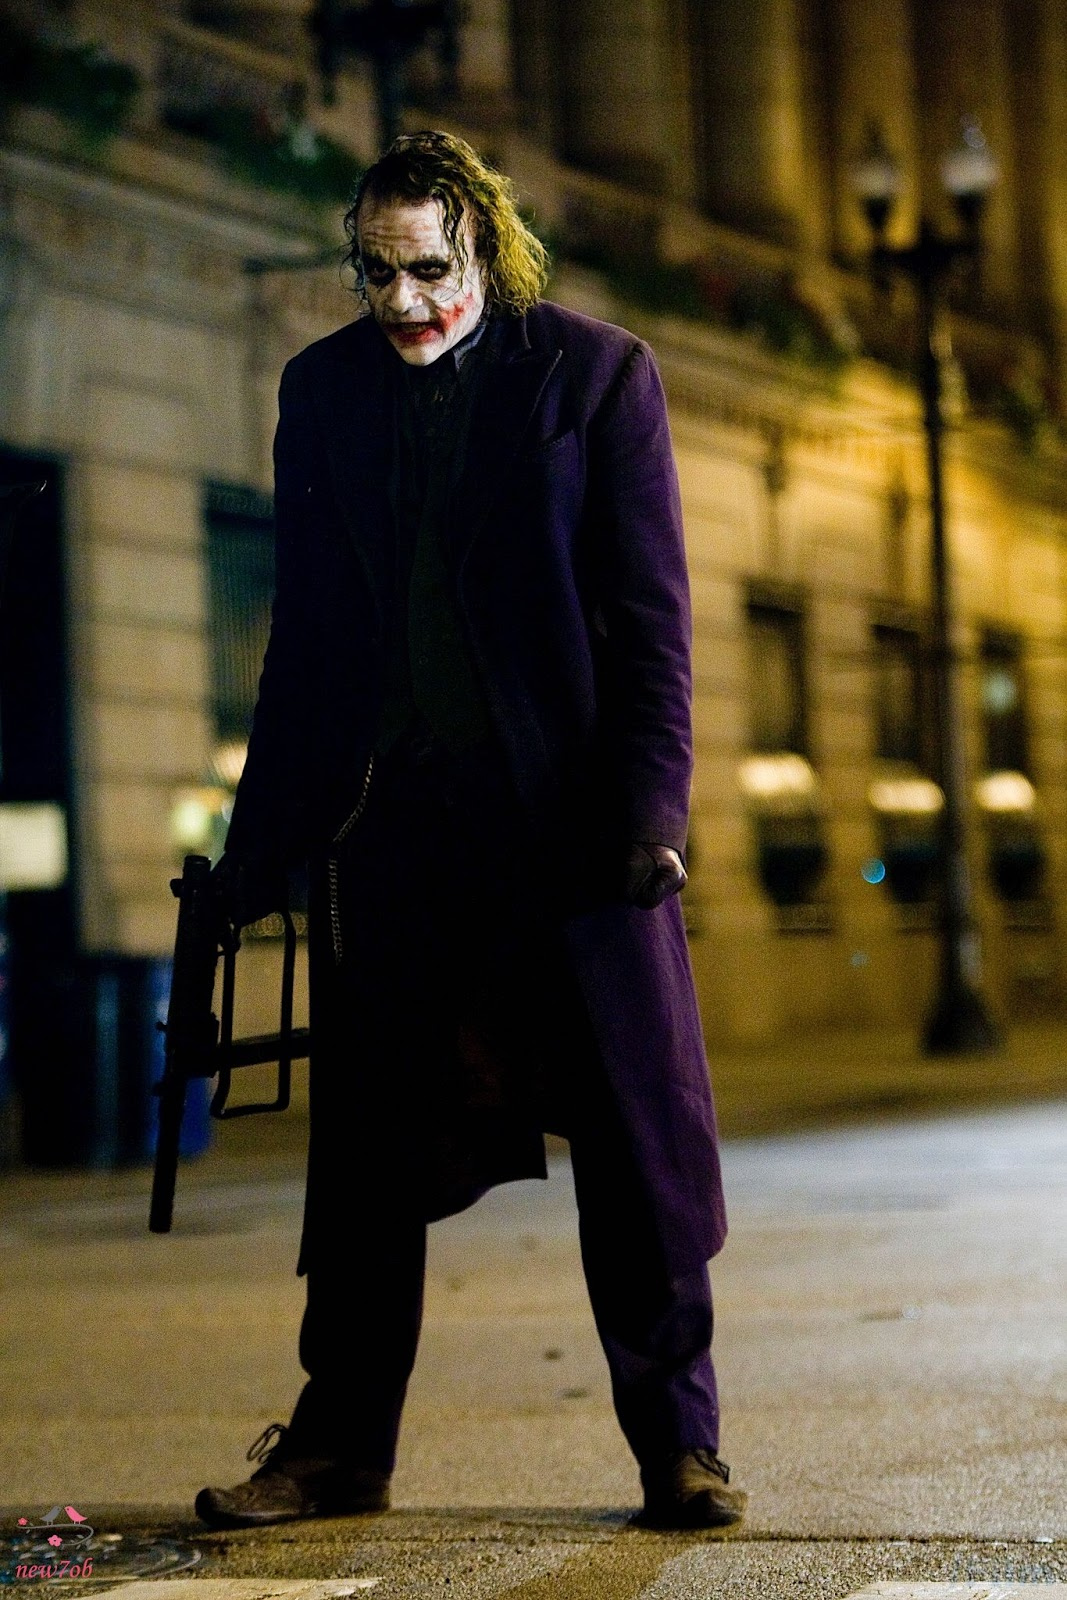 Joker | Bad Joker | Devil Joker